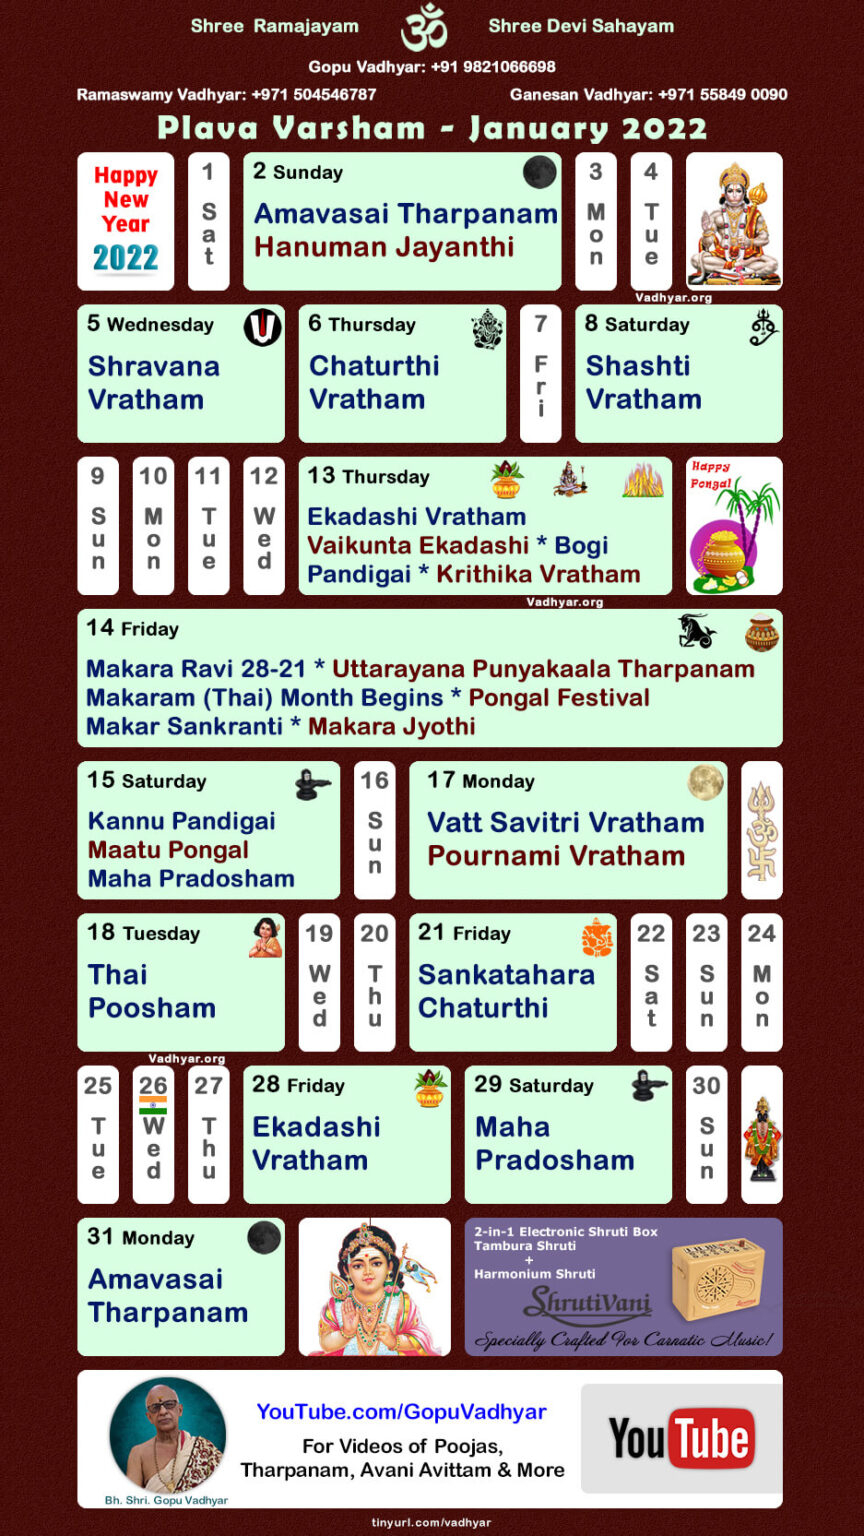 hindu spiritual vedic calendar plava varsham january